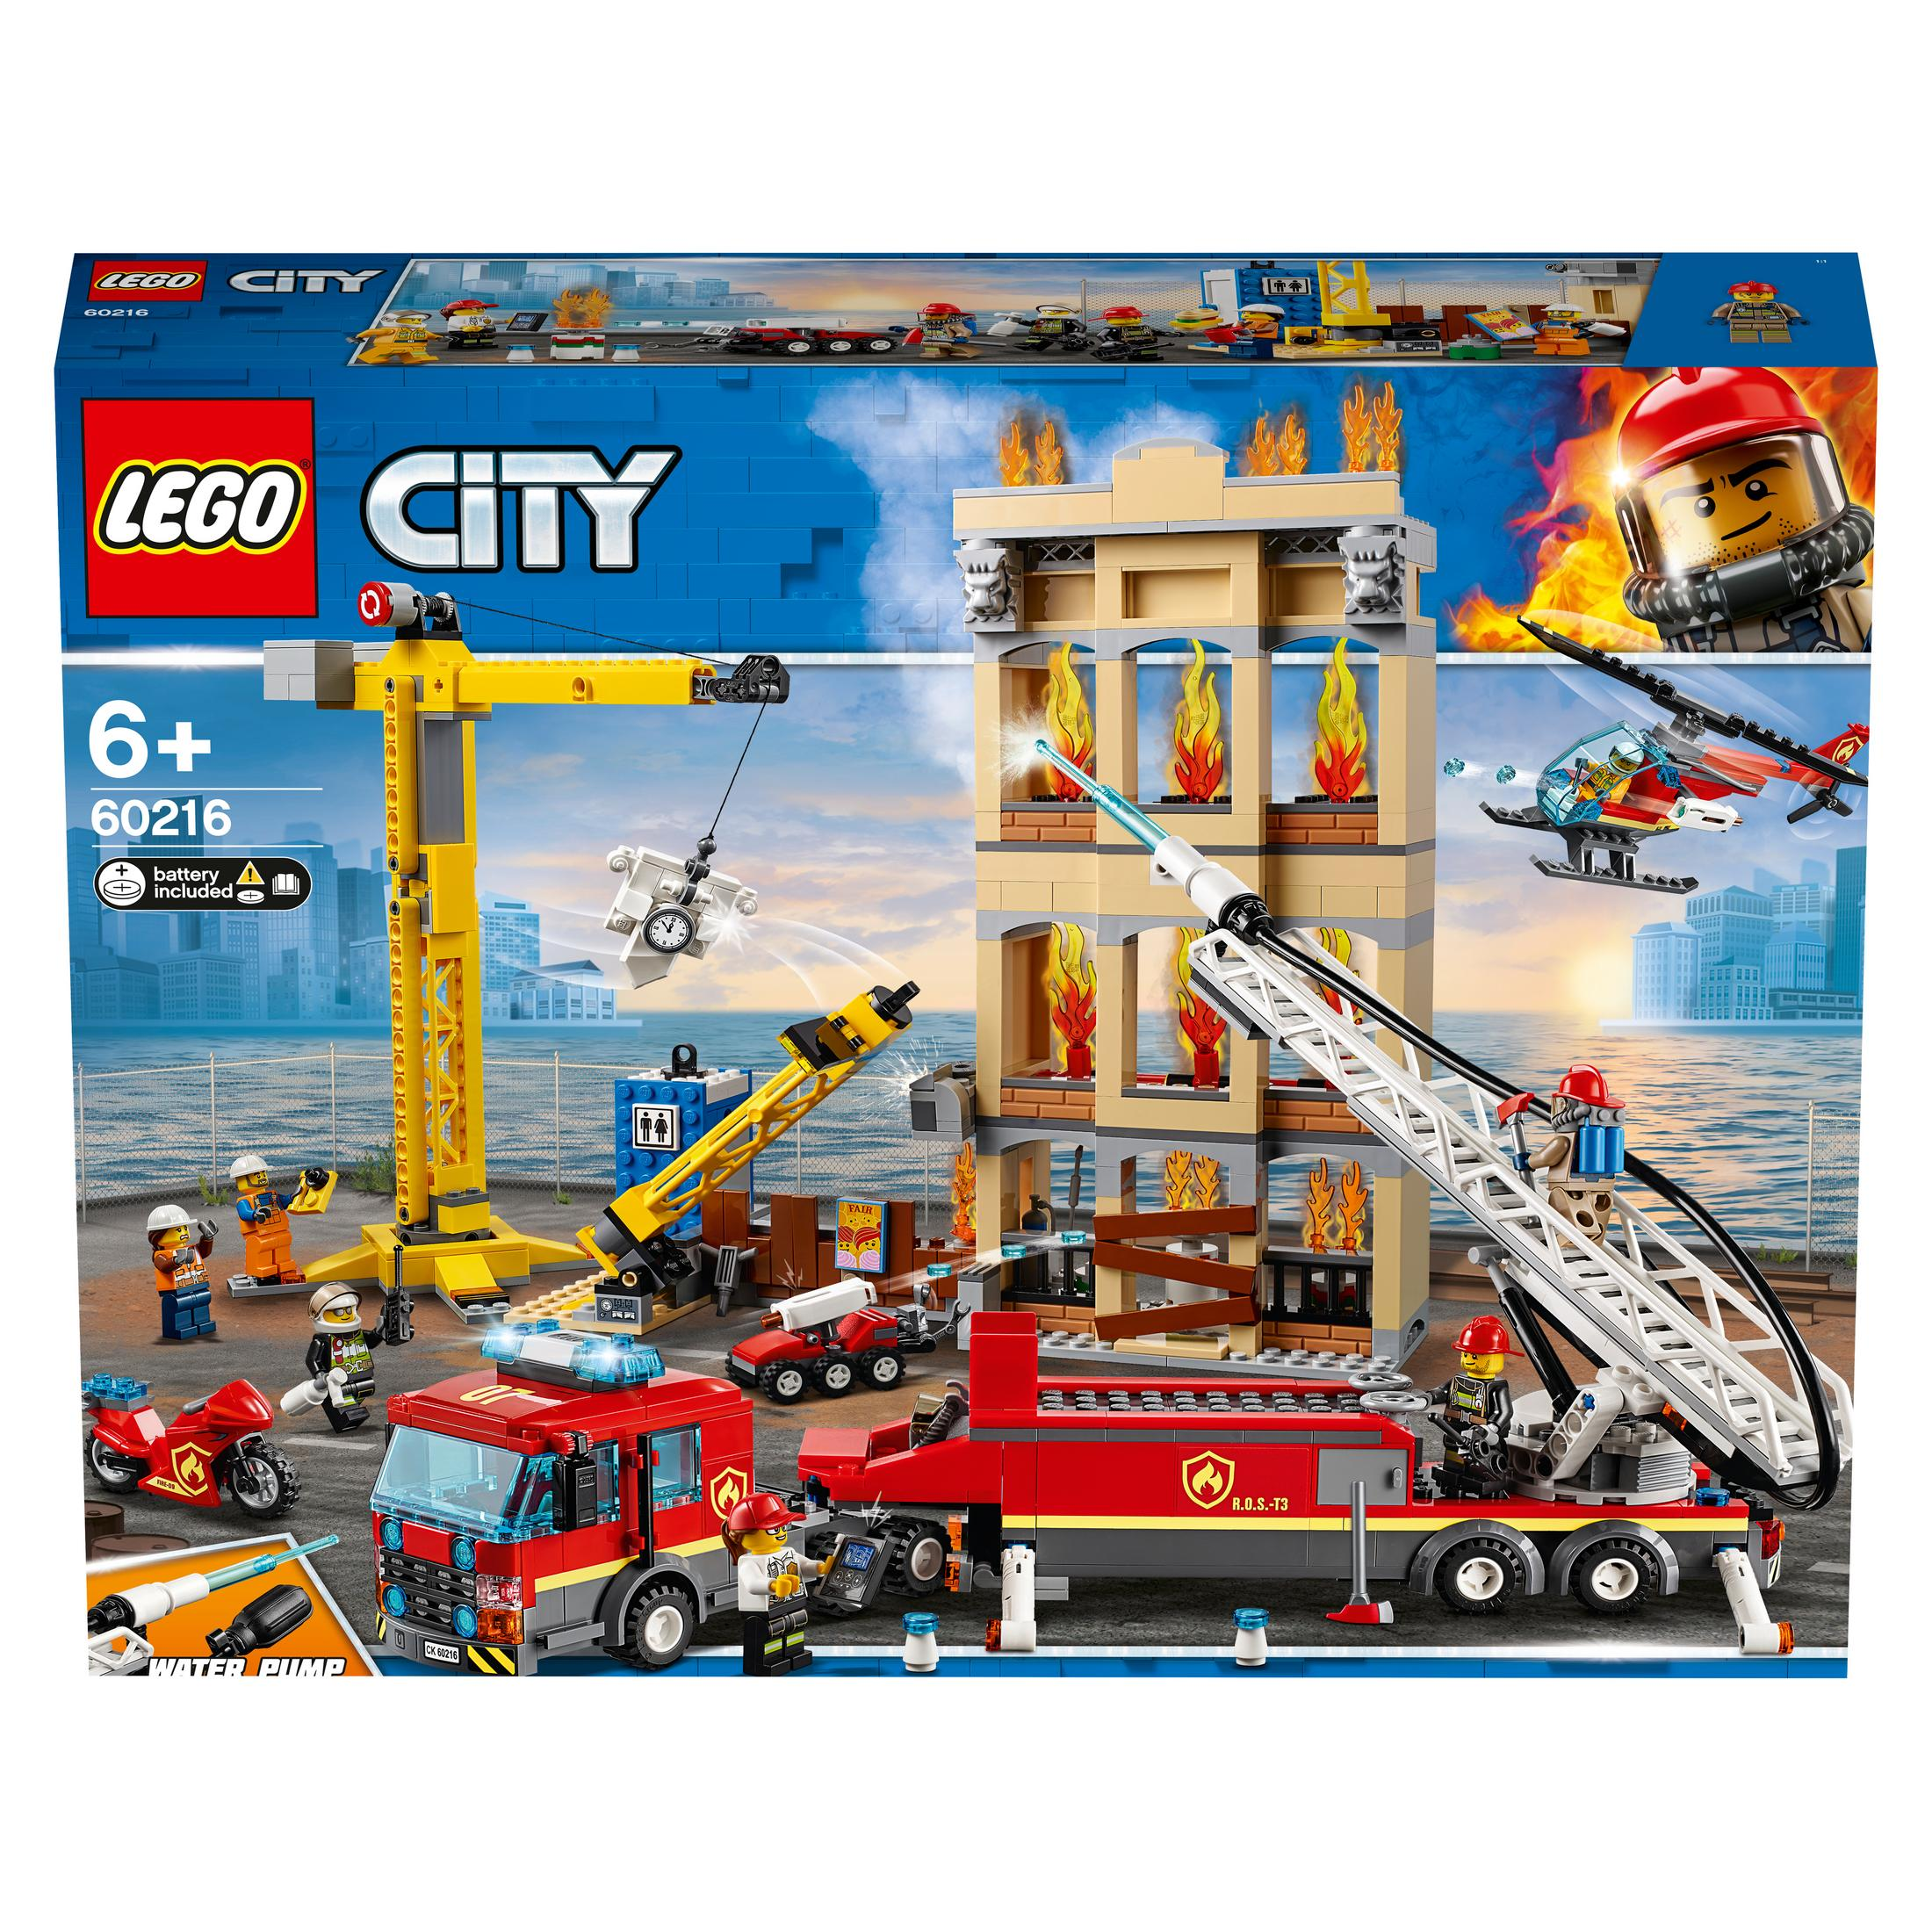 Bausatz, IN Mehrfarbig 60216 FEUERWEHR LEGO DER STADT